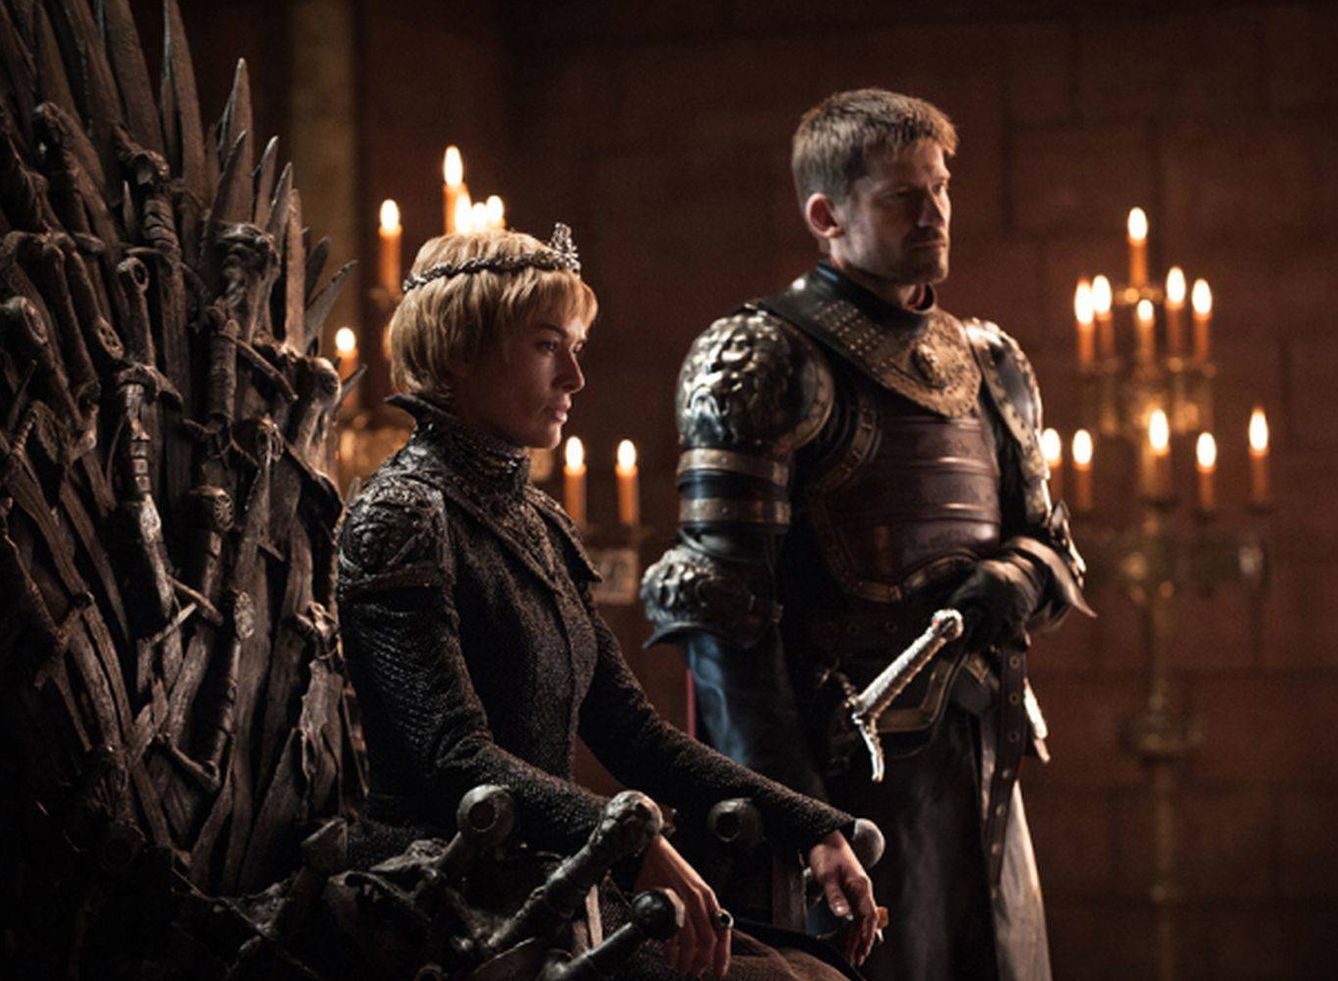 Imagen del primer capítulo de la séptima temporada con Cersei y Jaime mostrando sus diferencias